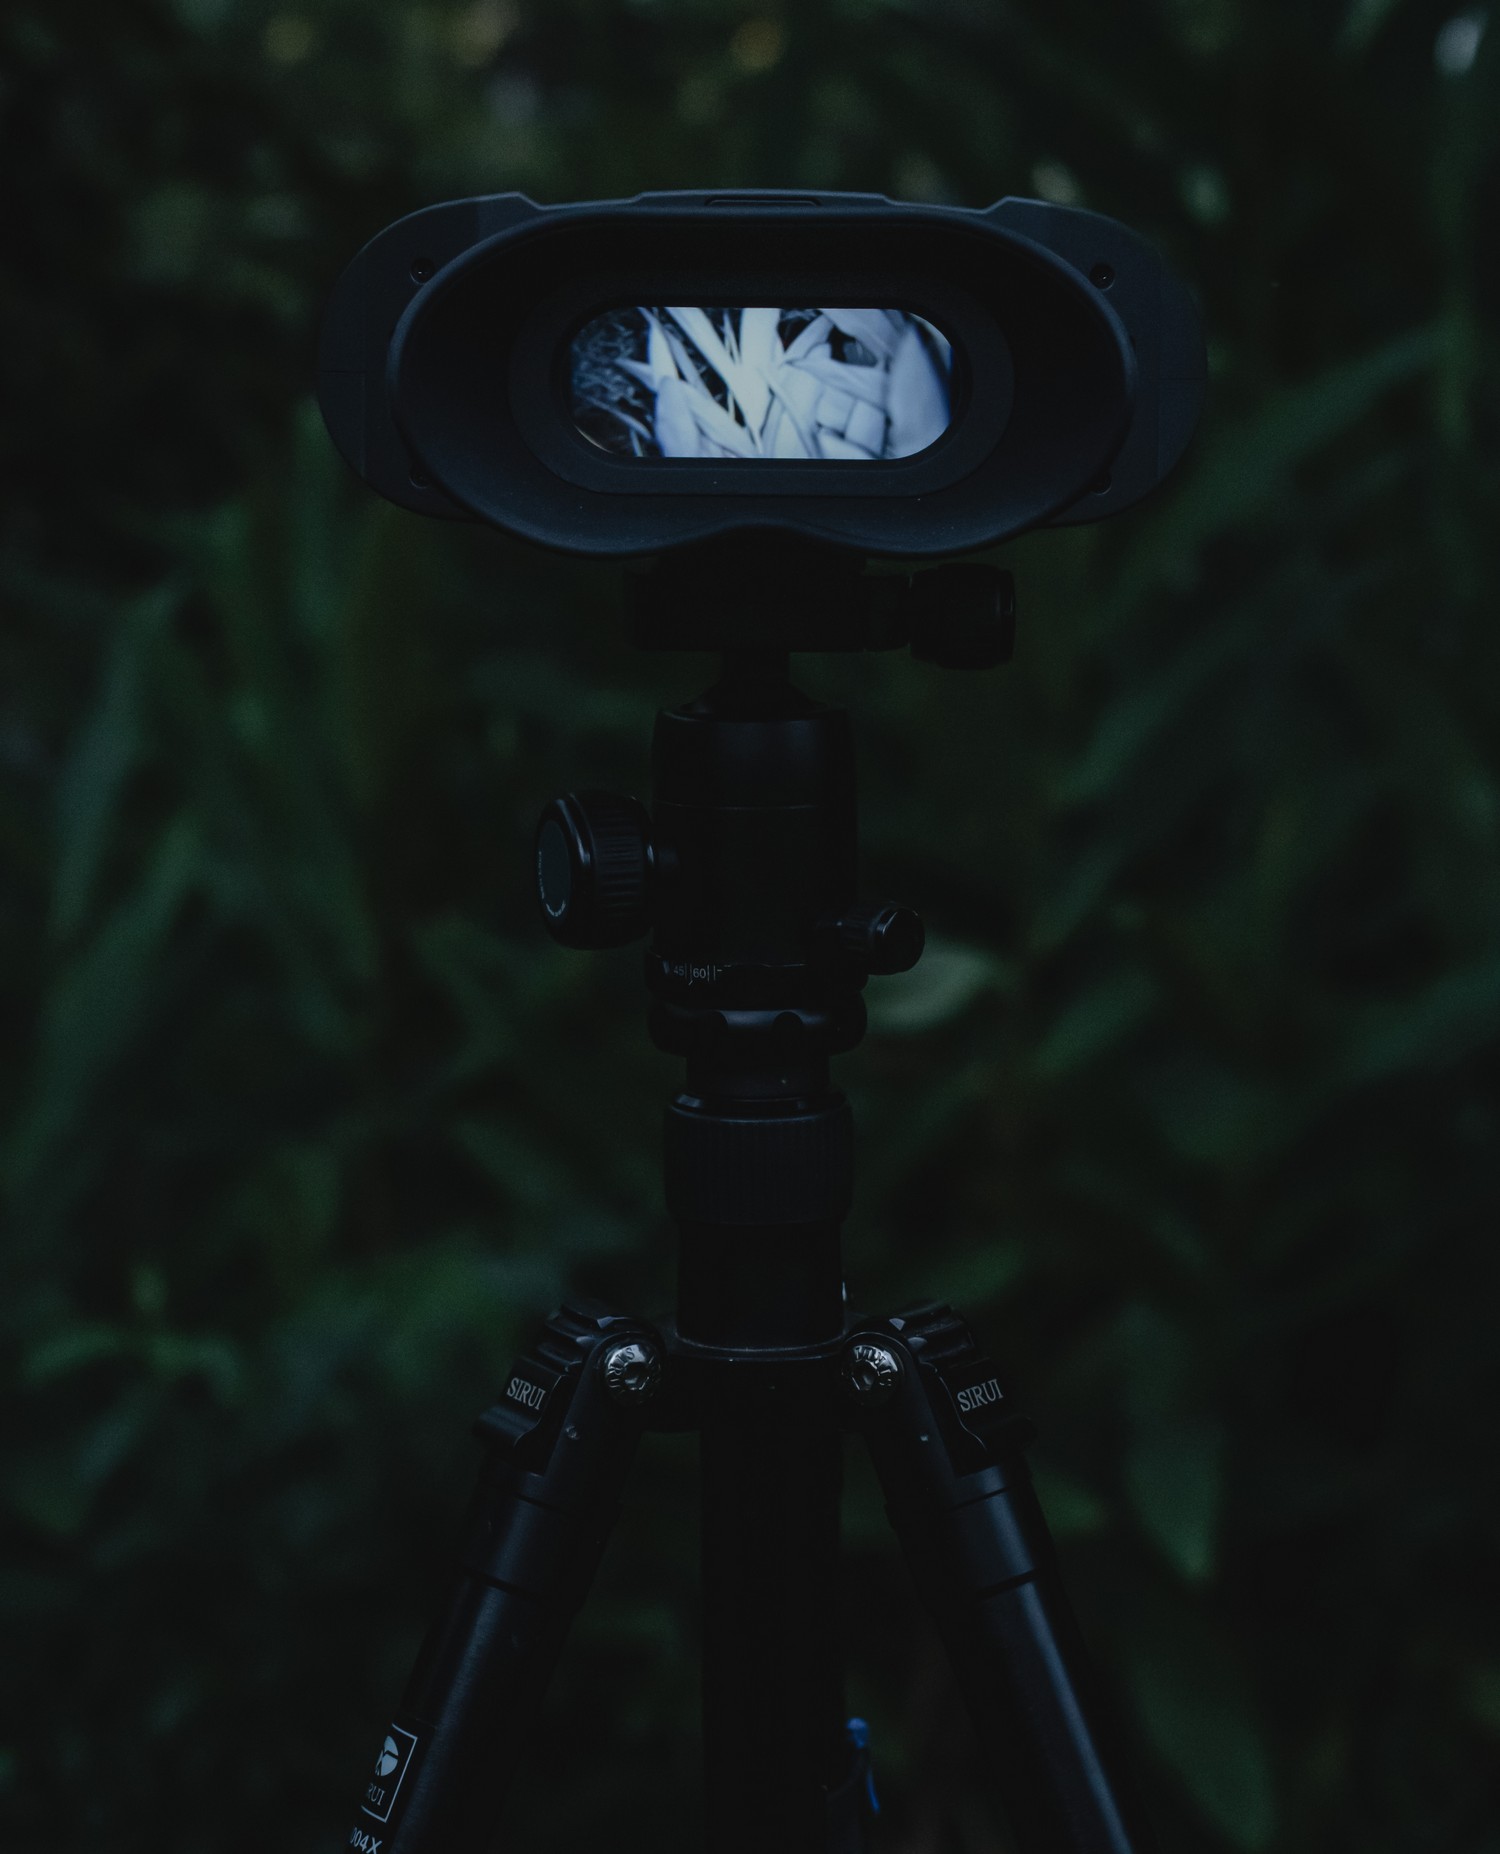 νυχτερινή όραση NVB 200 - Αυτόματη εναλλαγή ημέρας και νύχτας διπλής λειτουργίας